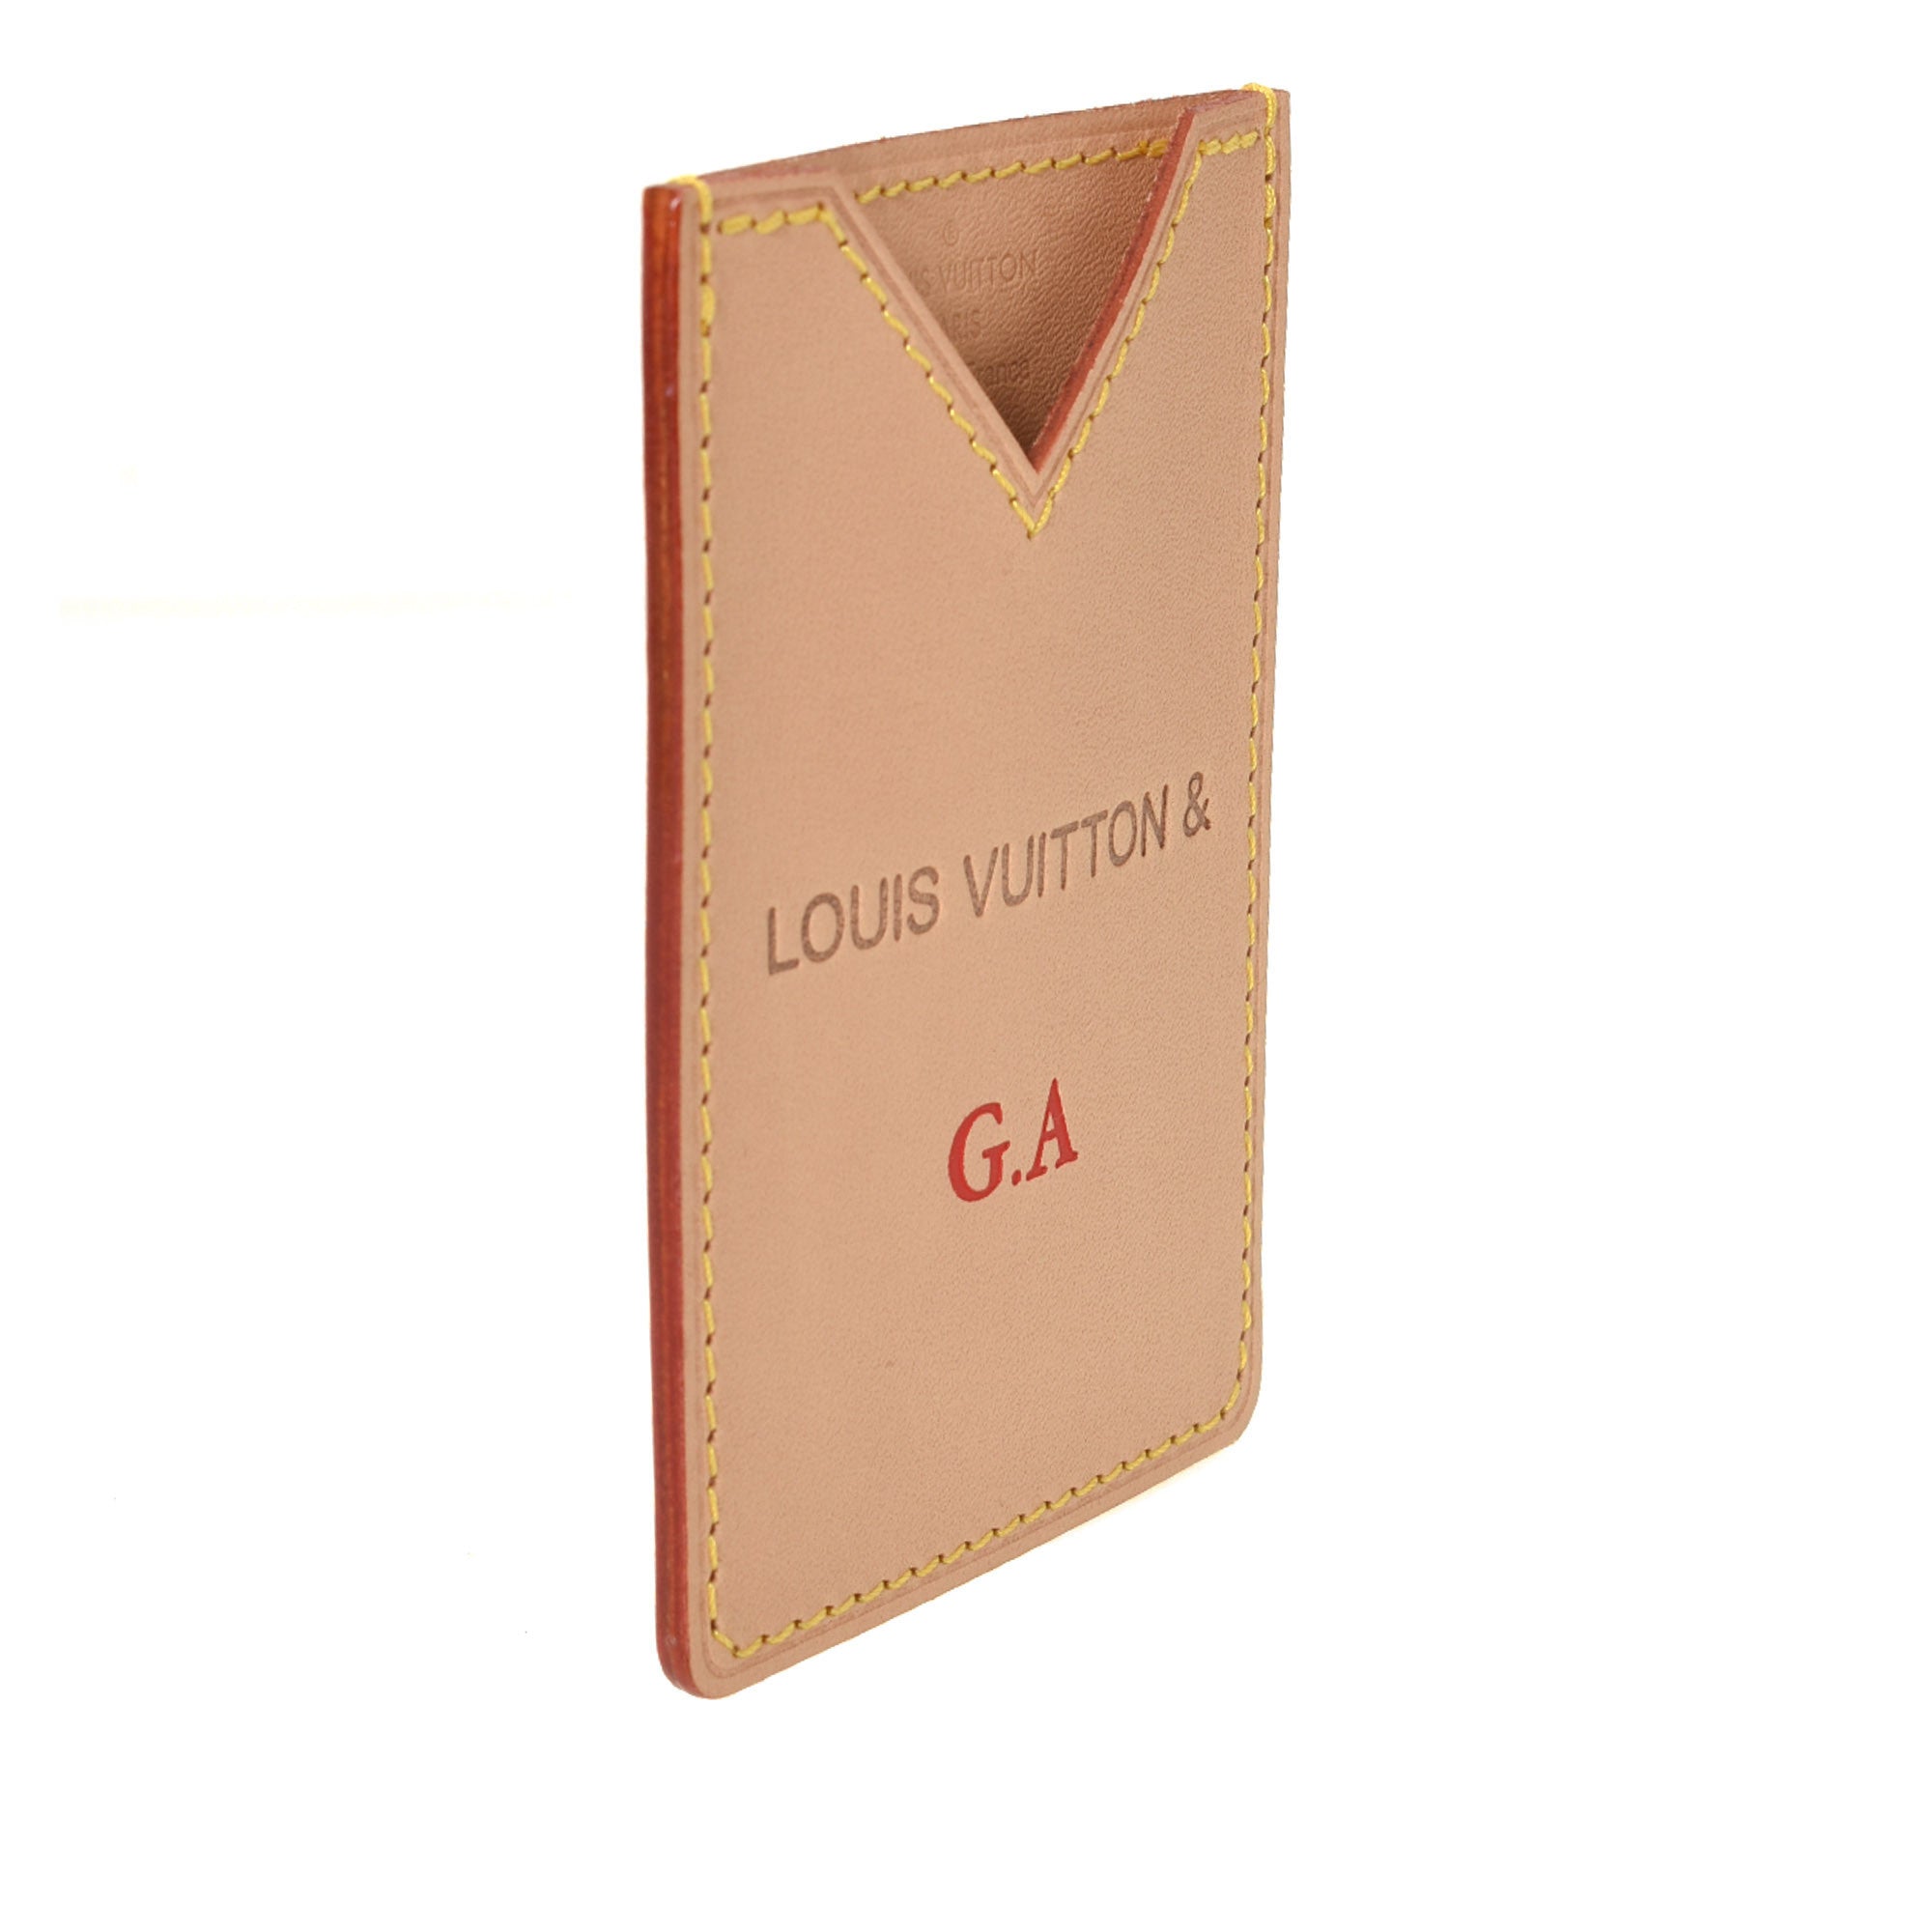 Louis Vuitton Vachetta Voyages Card Holder